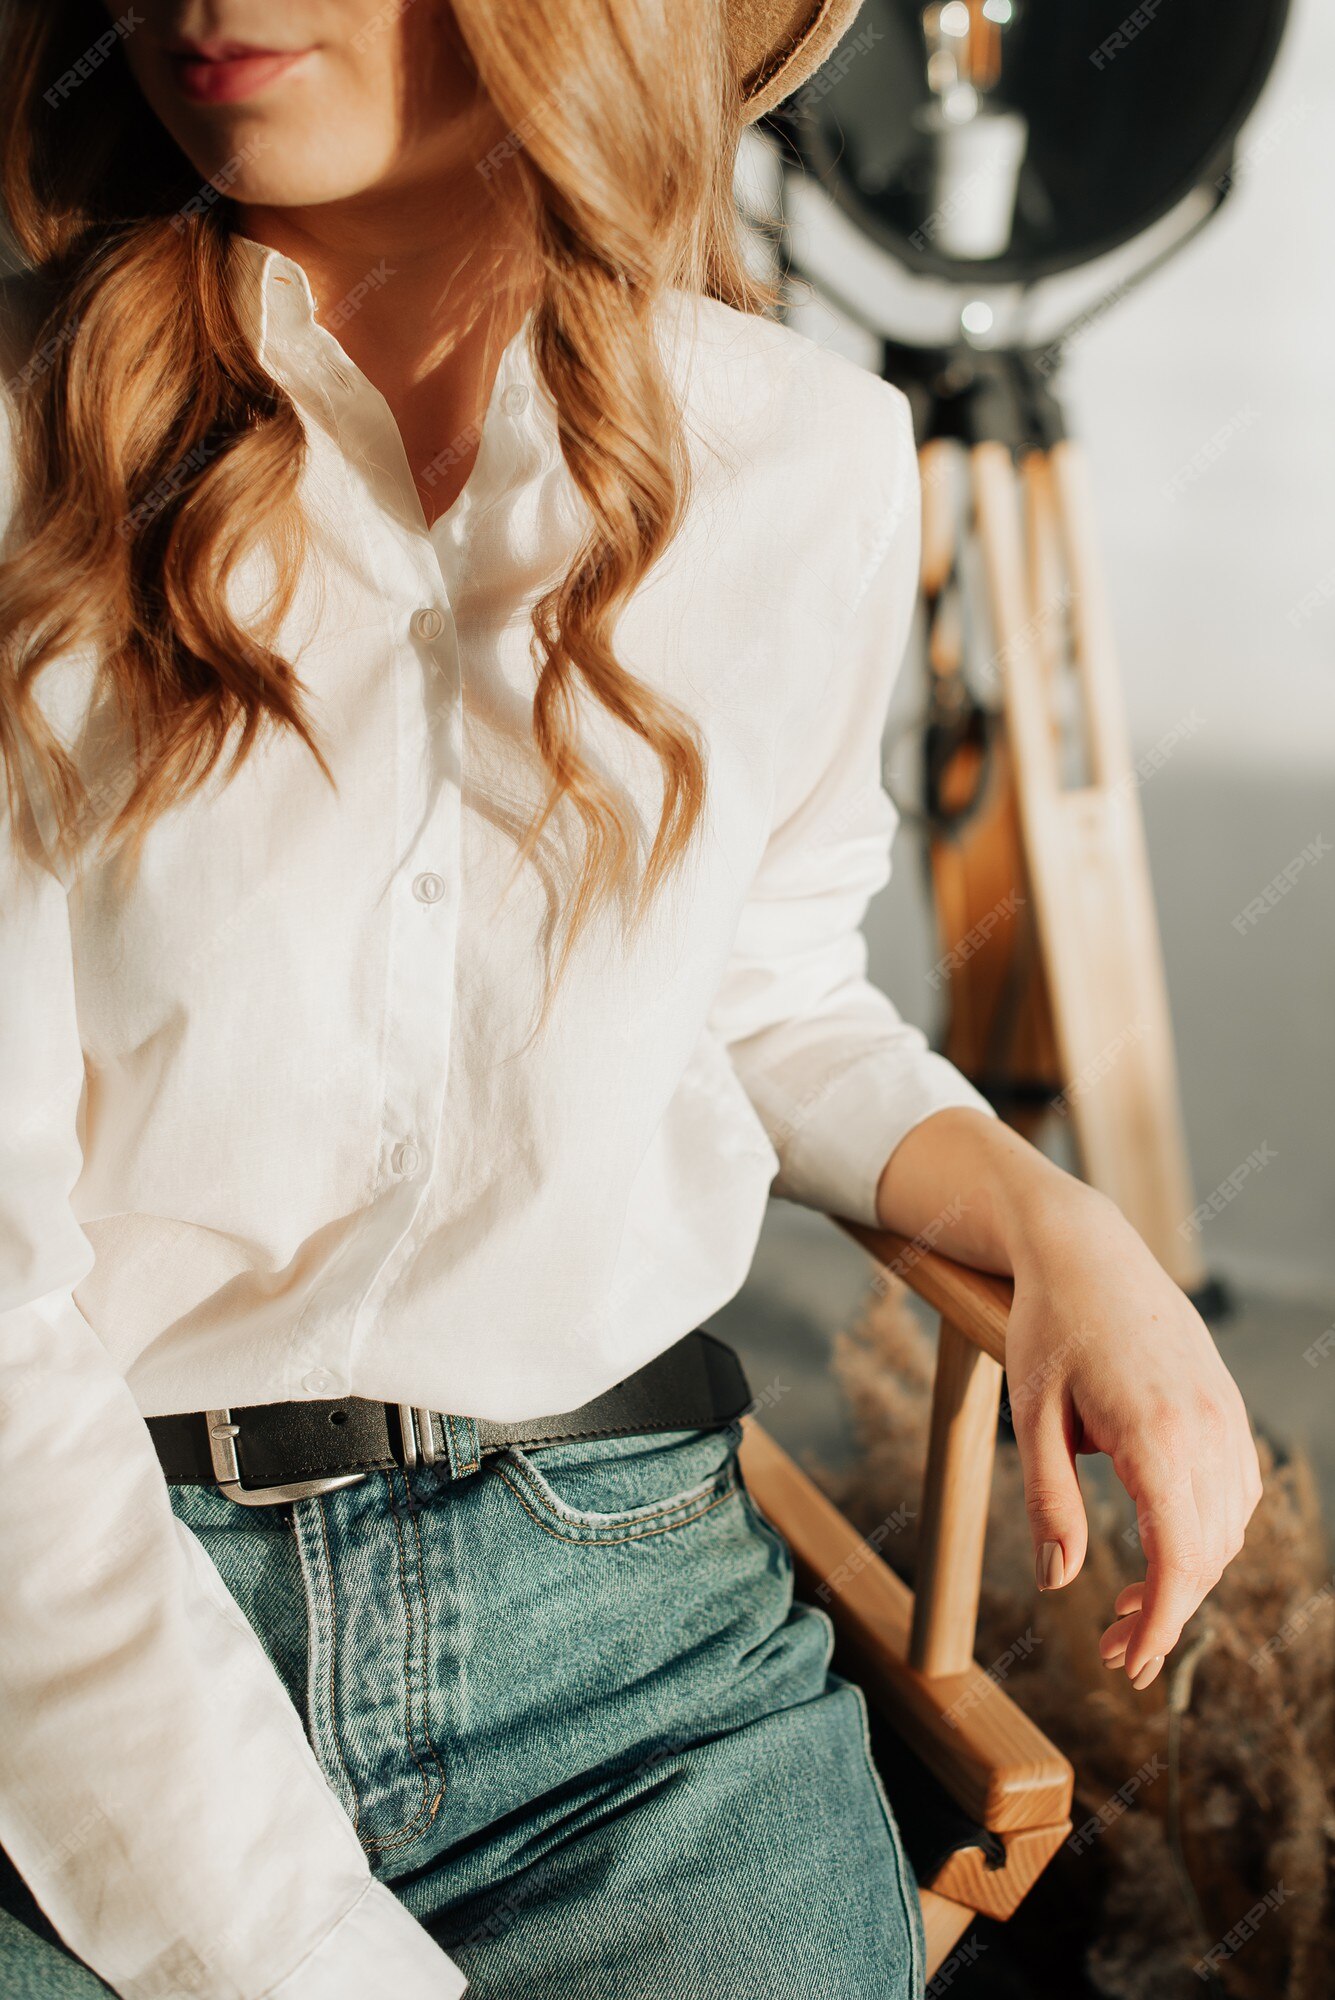 Chica joven con estilo en jeans y camisa blanca sienta en una de madera | Foto Premium